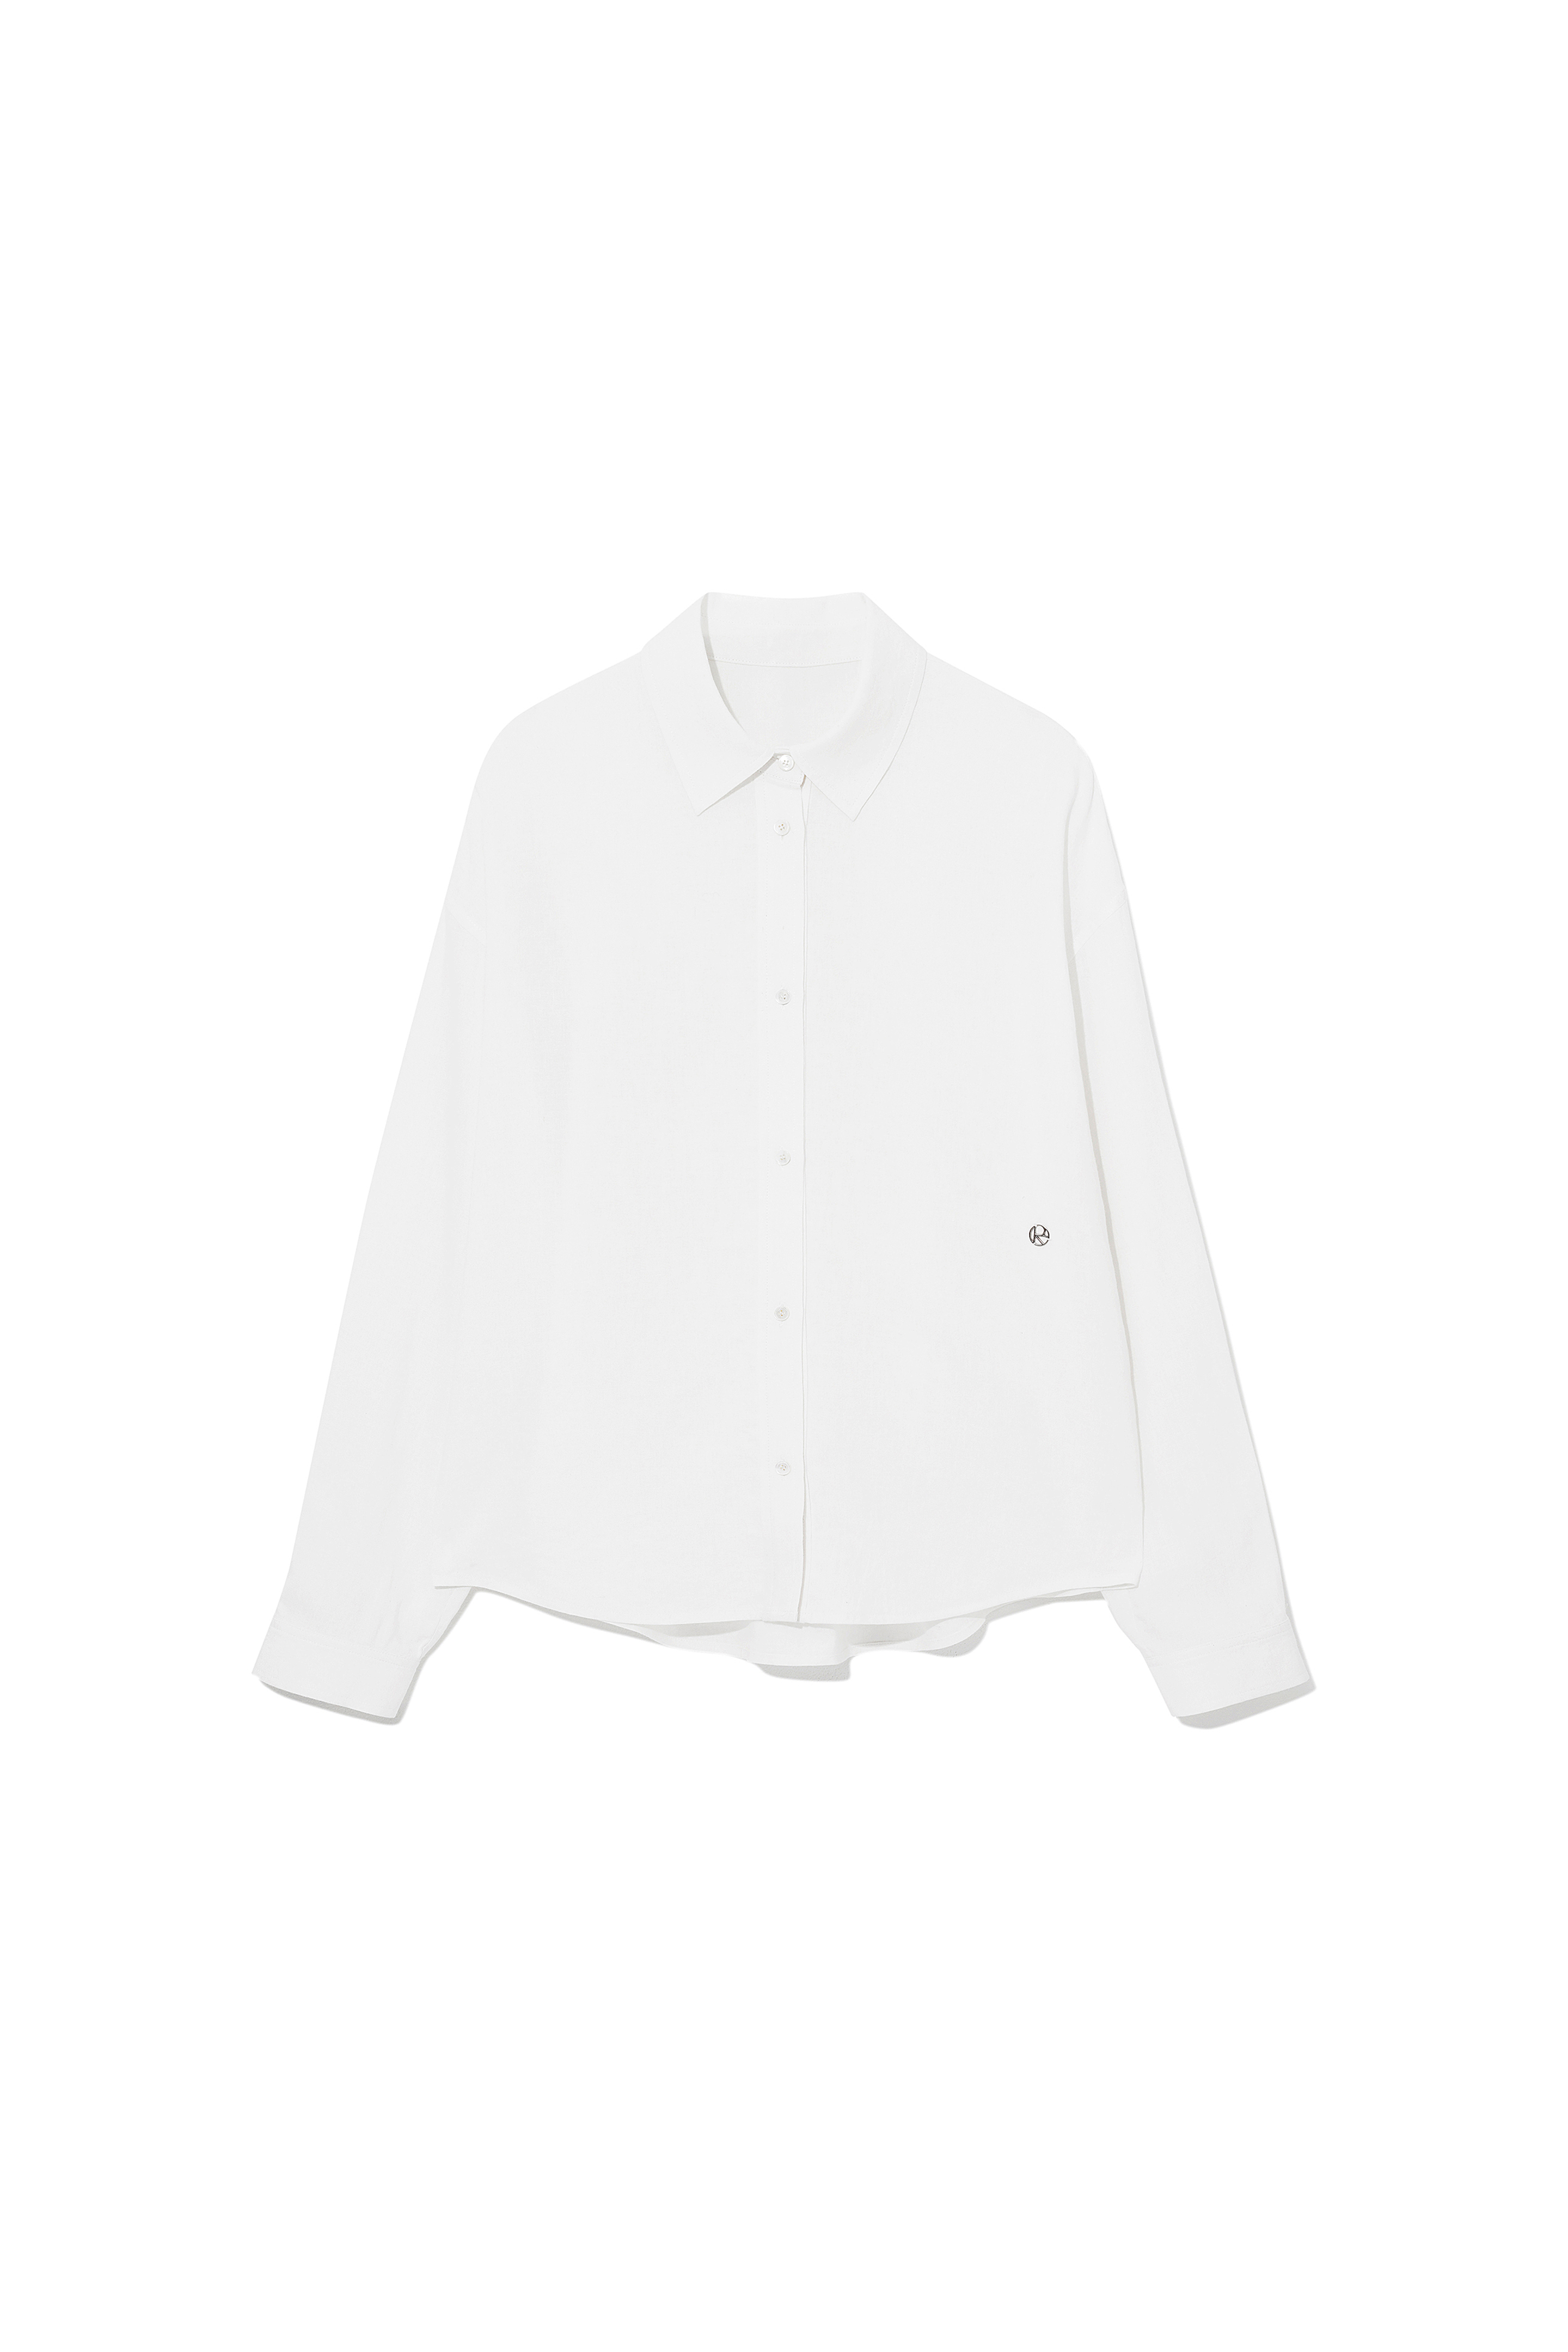 2nd) Summer Linen Shirts [06.16(FRI) 예약 발송]